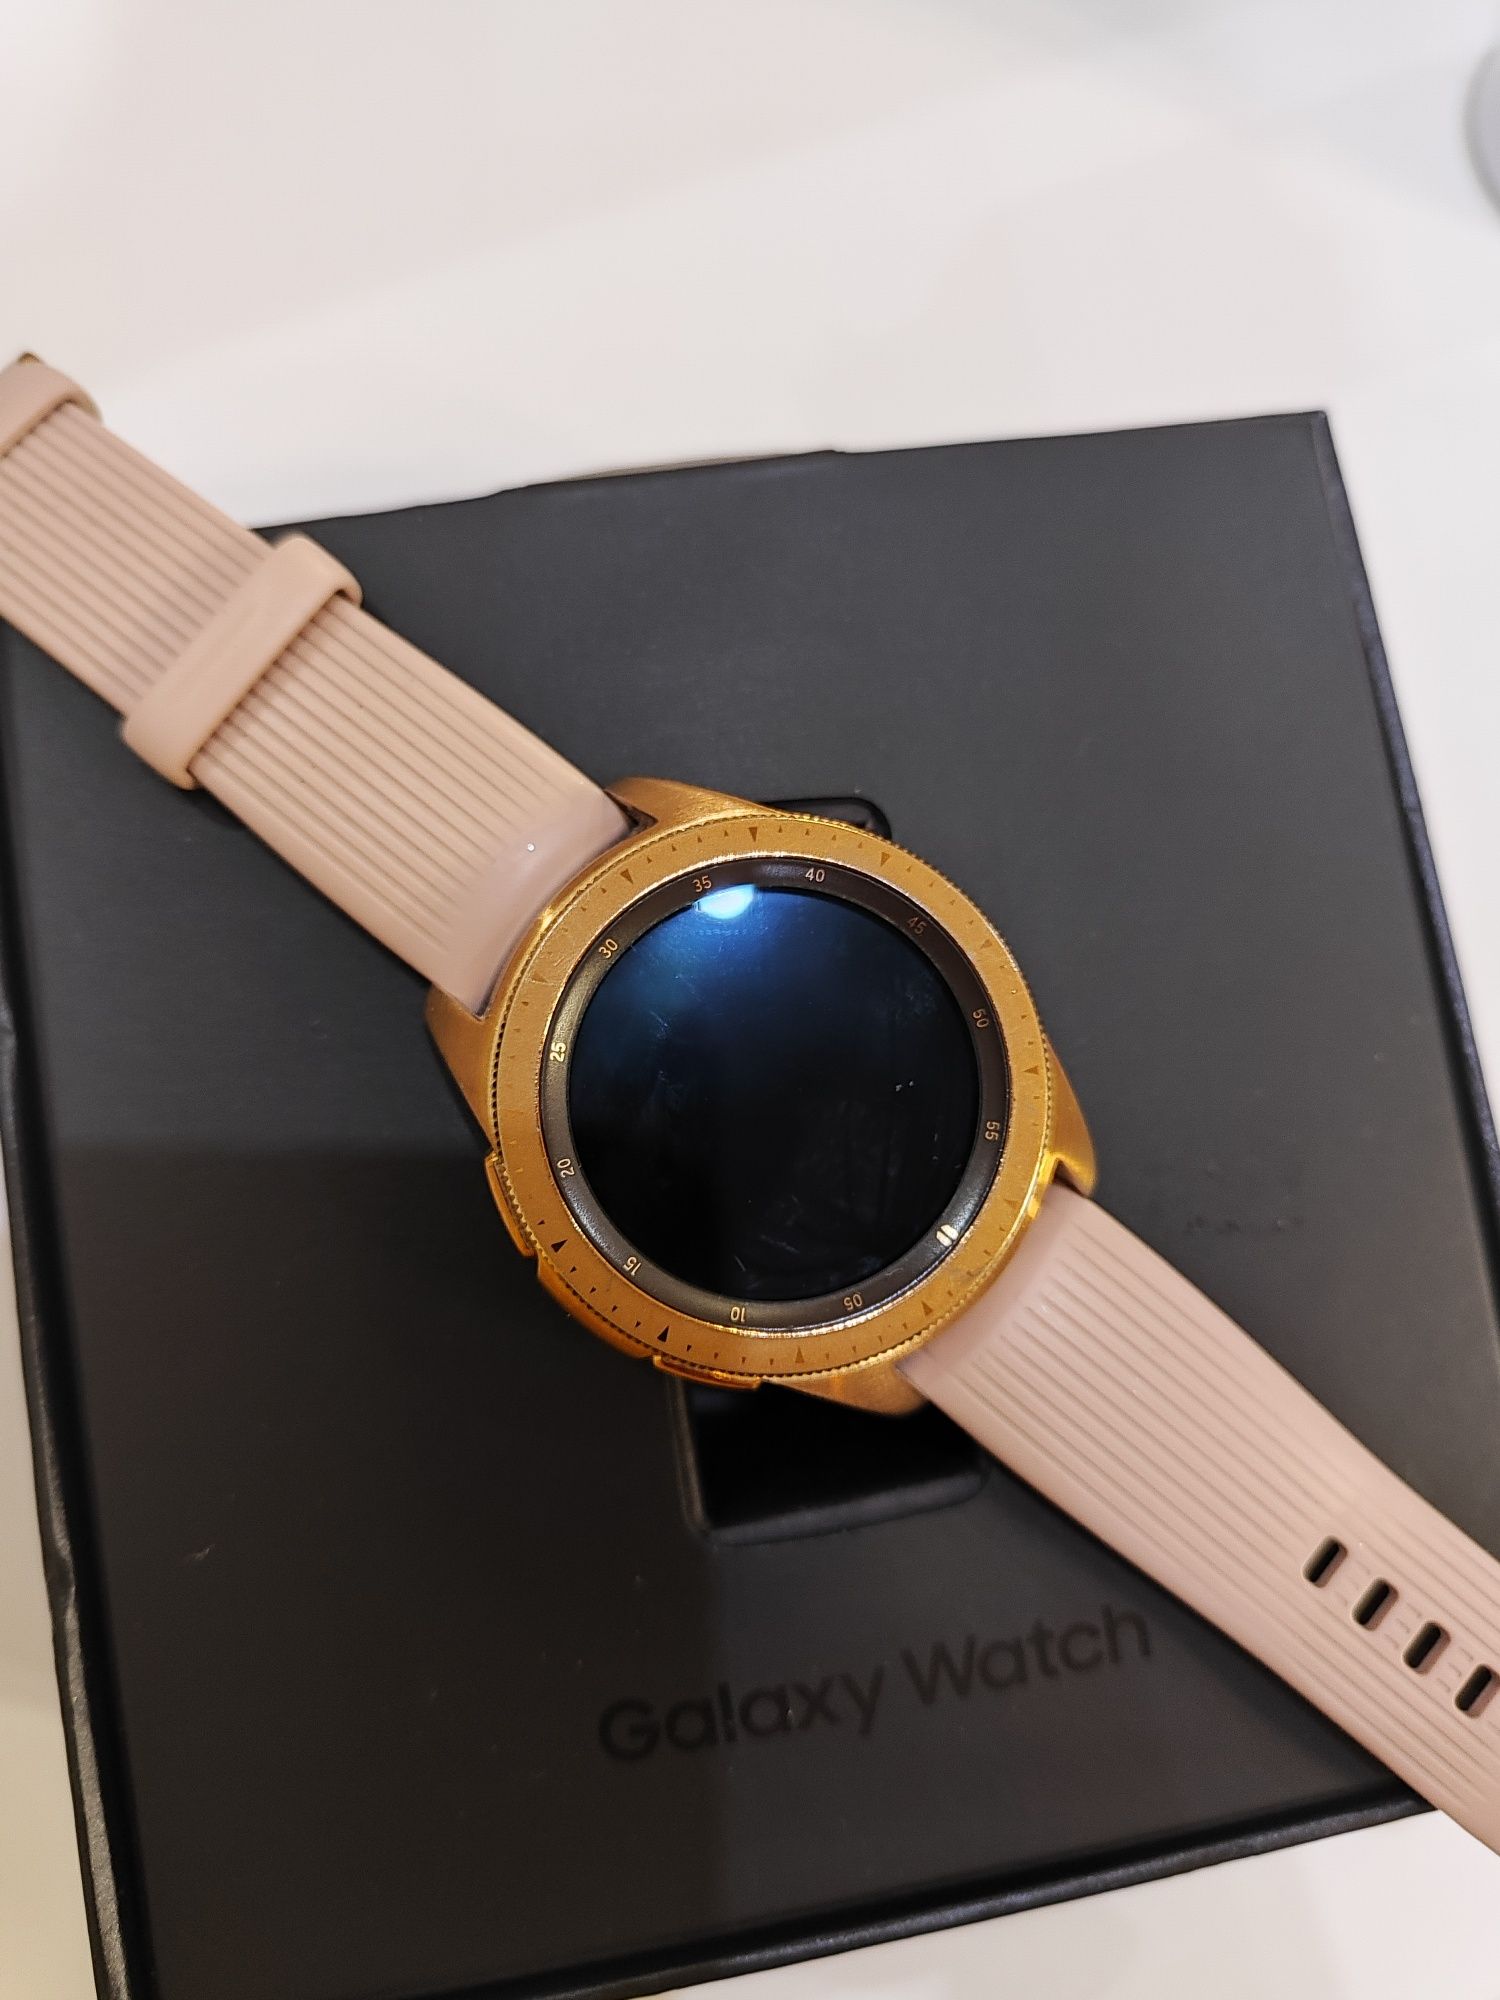 Часы Galaxy Watch